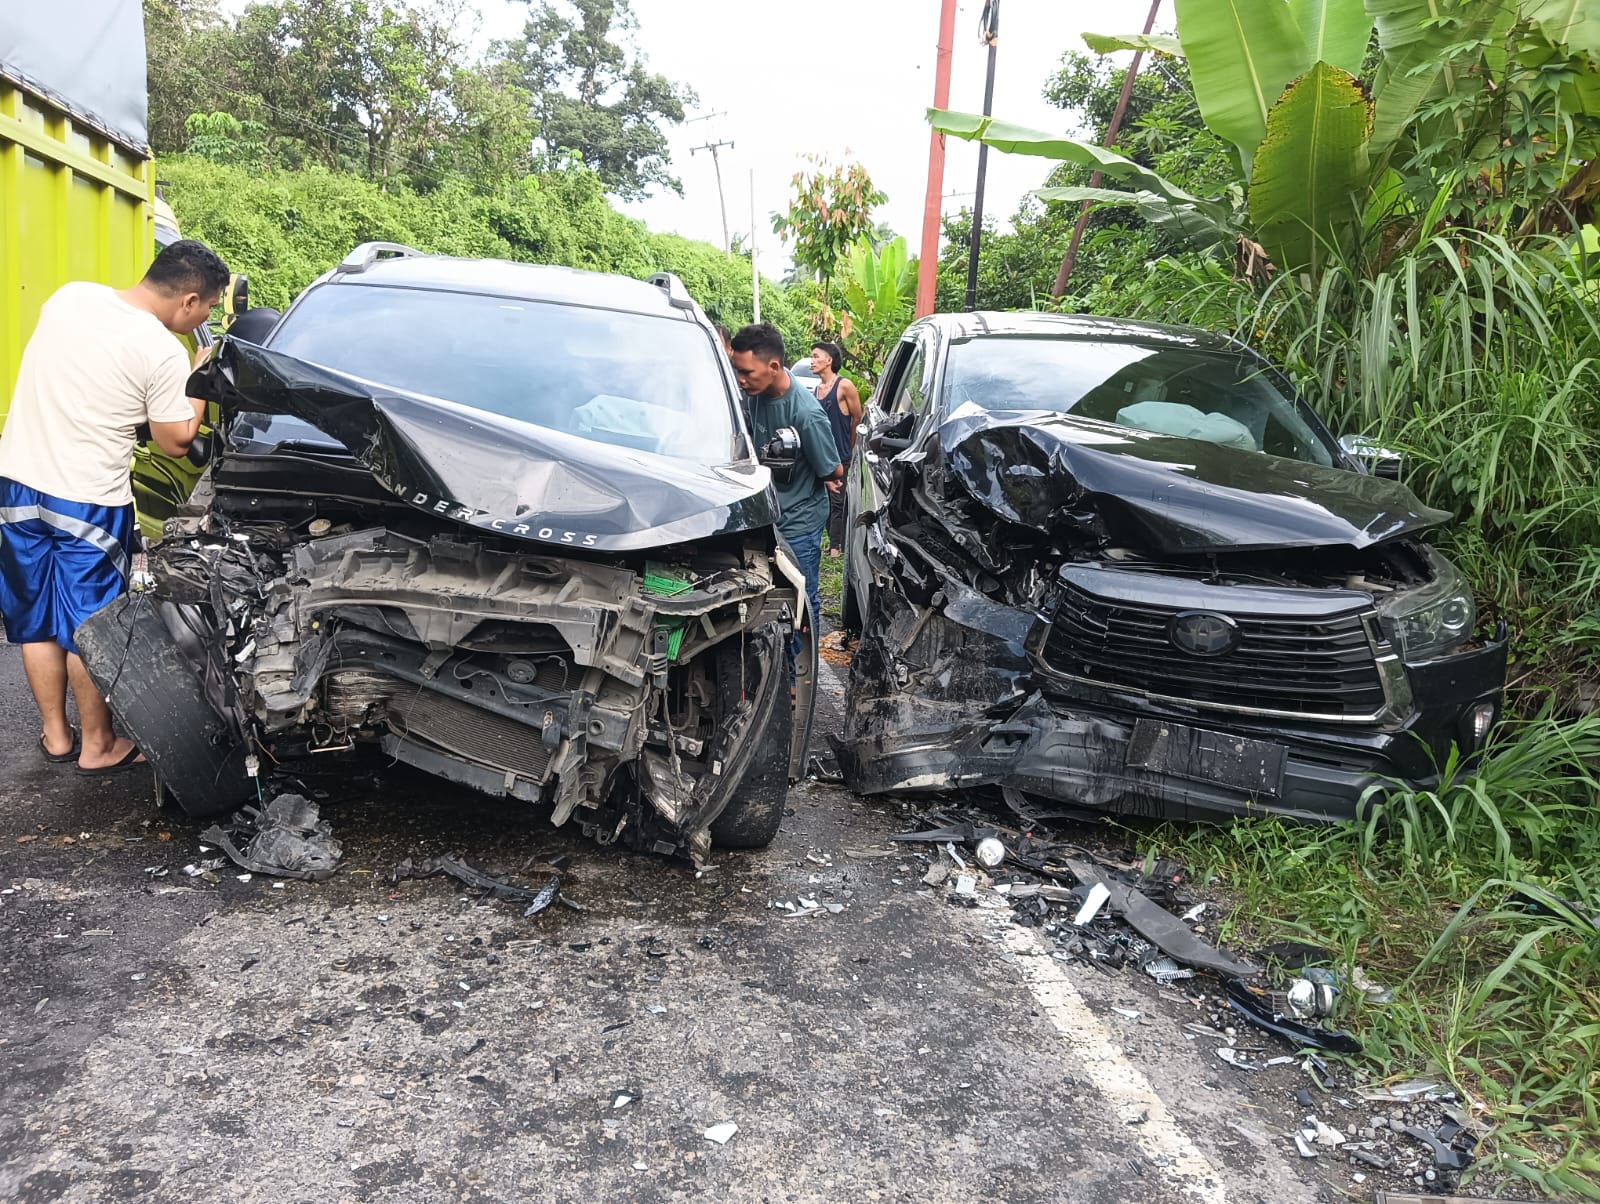 Beginilah kondisi dua unit minibus usai kecelakaan yang terjadi di Desa Huta Holbung, Kecamatan Sayur Matinggi, Kabupaten Tapsel